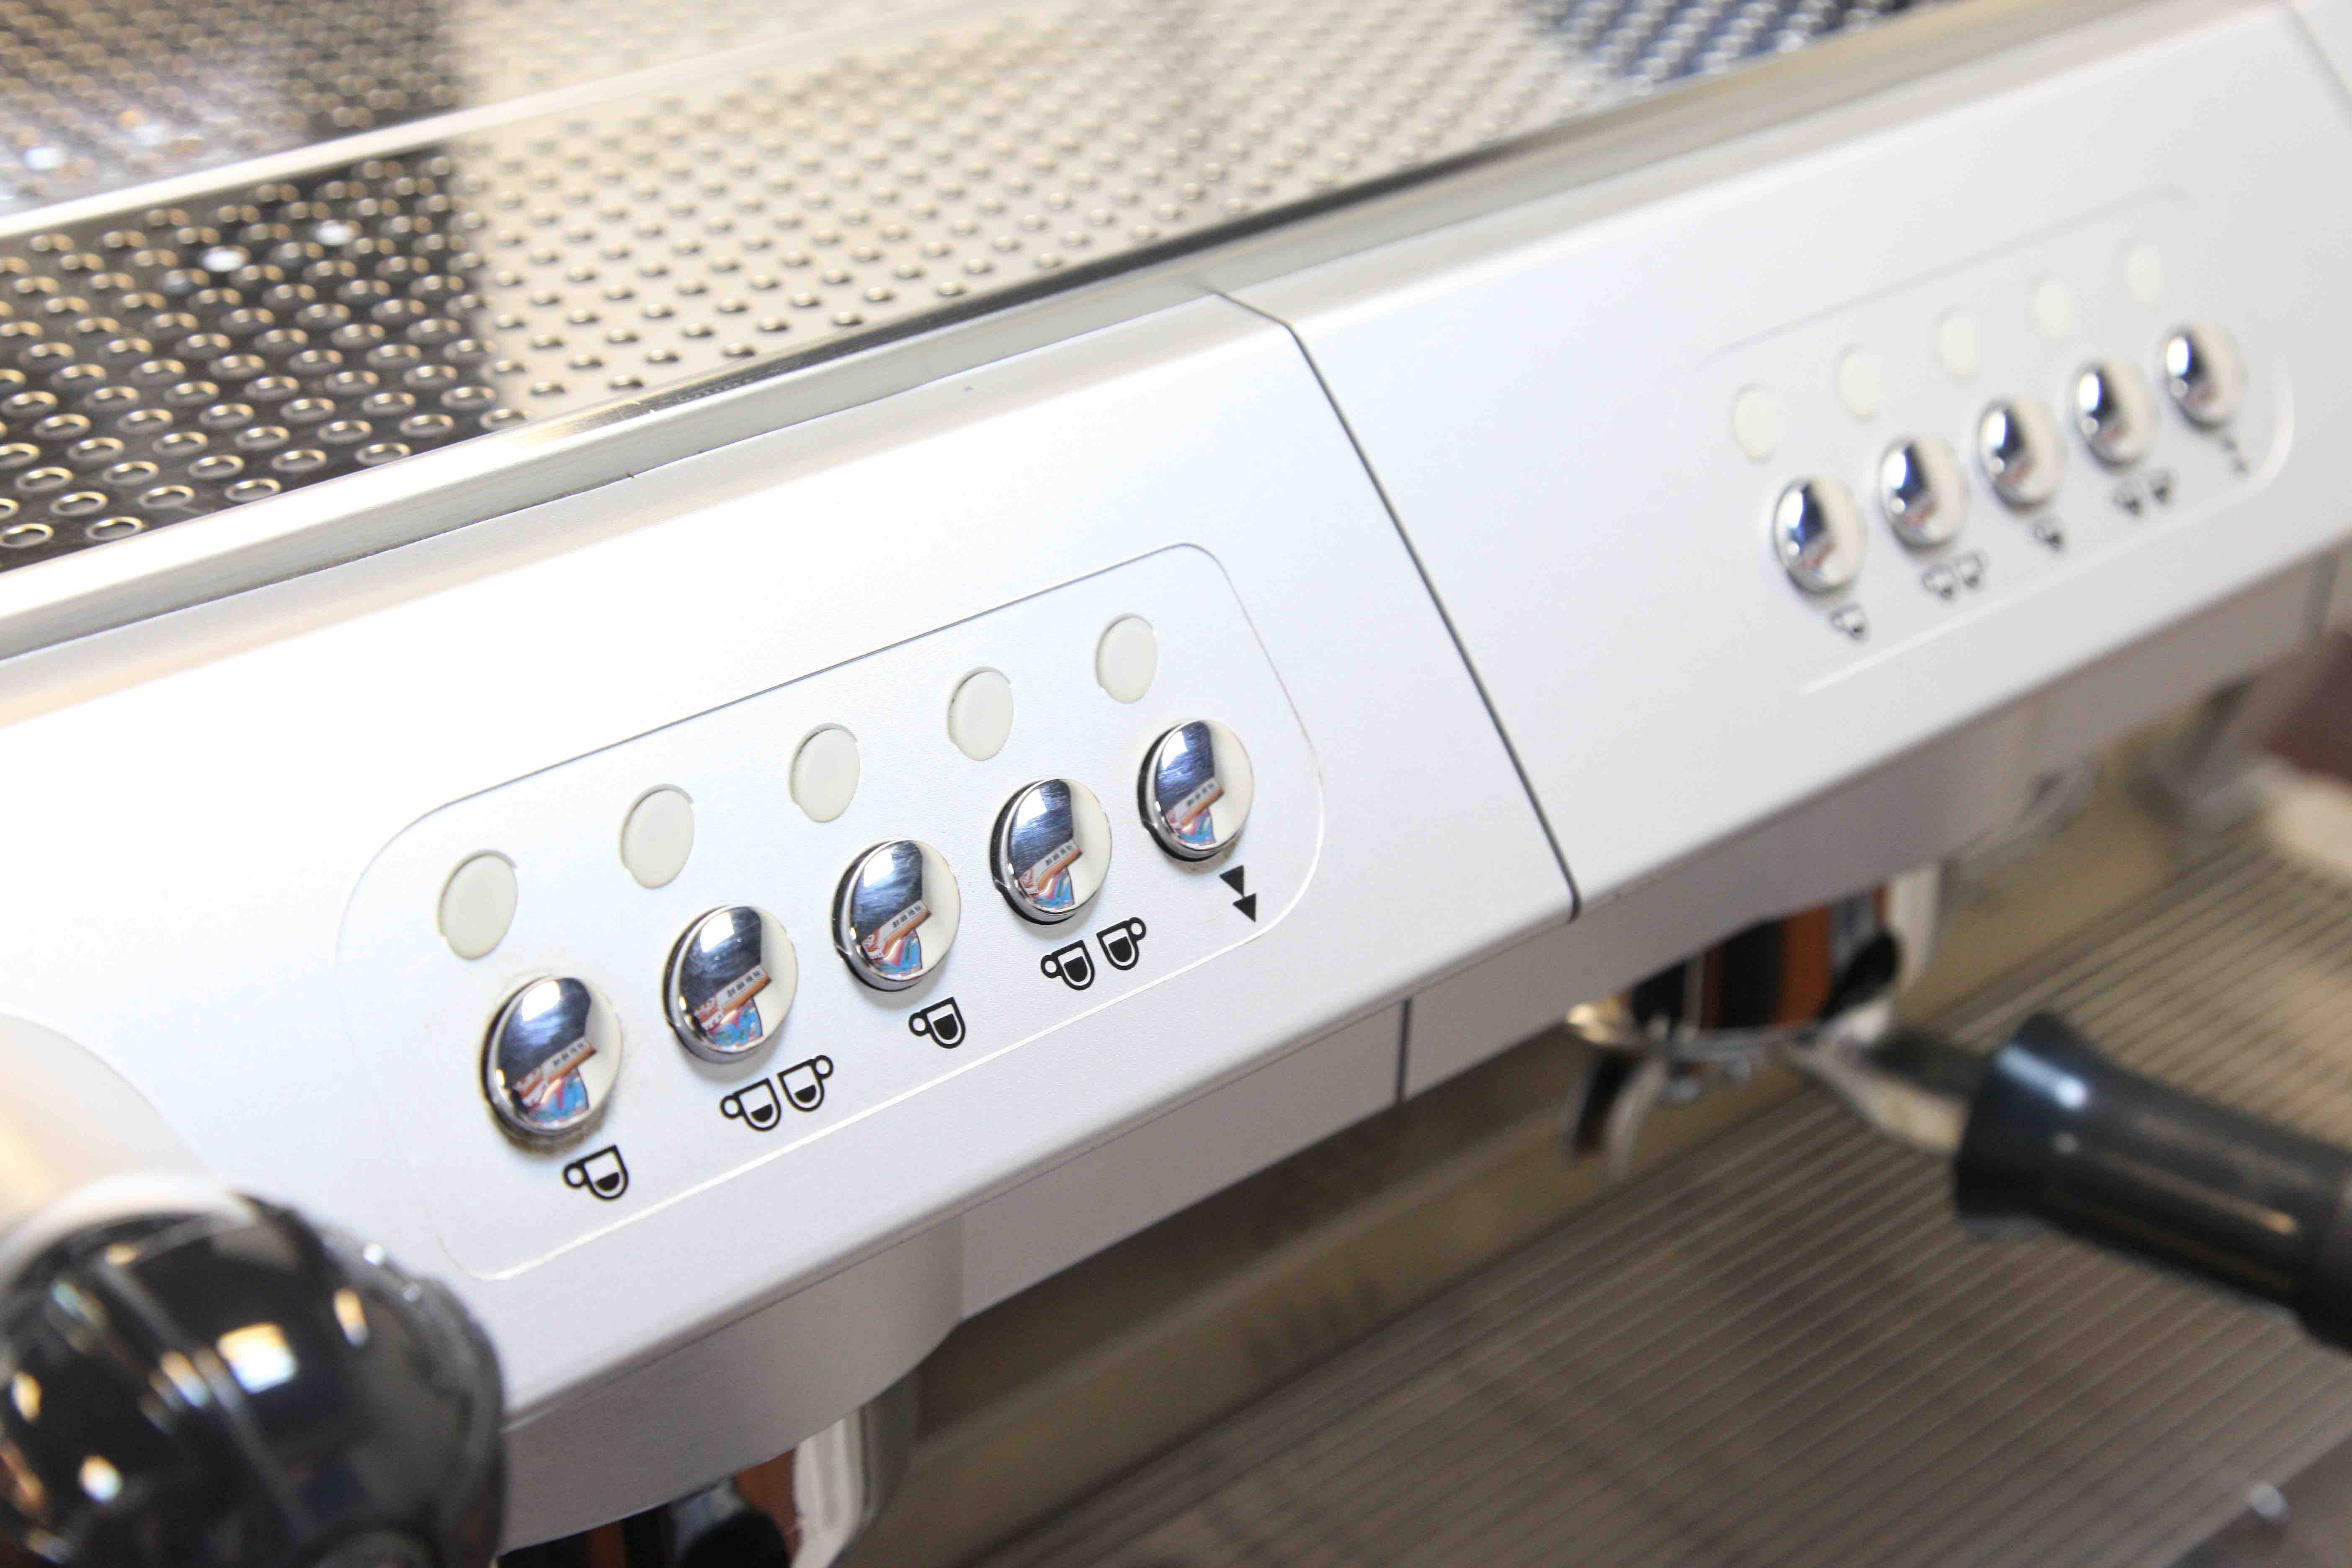 半自動咖啡機 SE200 Saeco 直覺化按鍵設計 營業用專業型機種